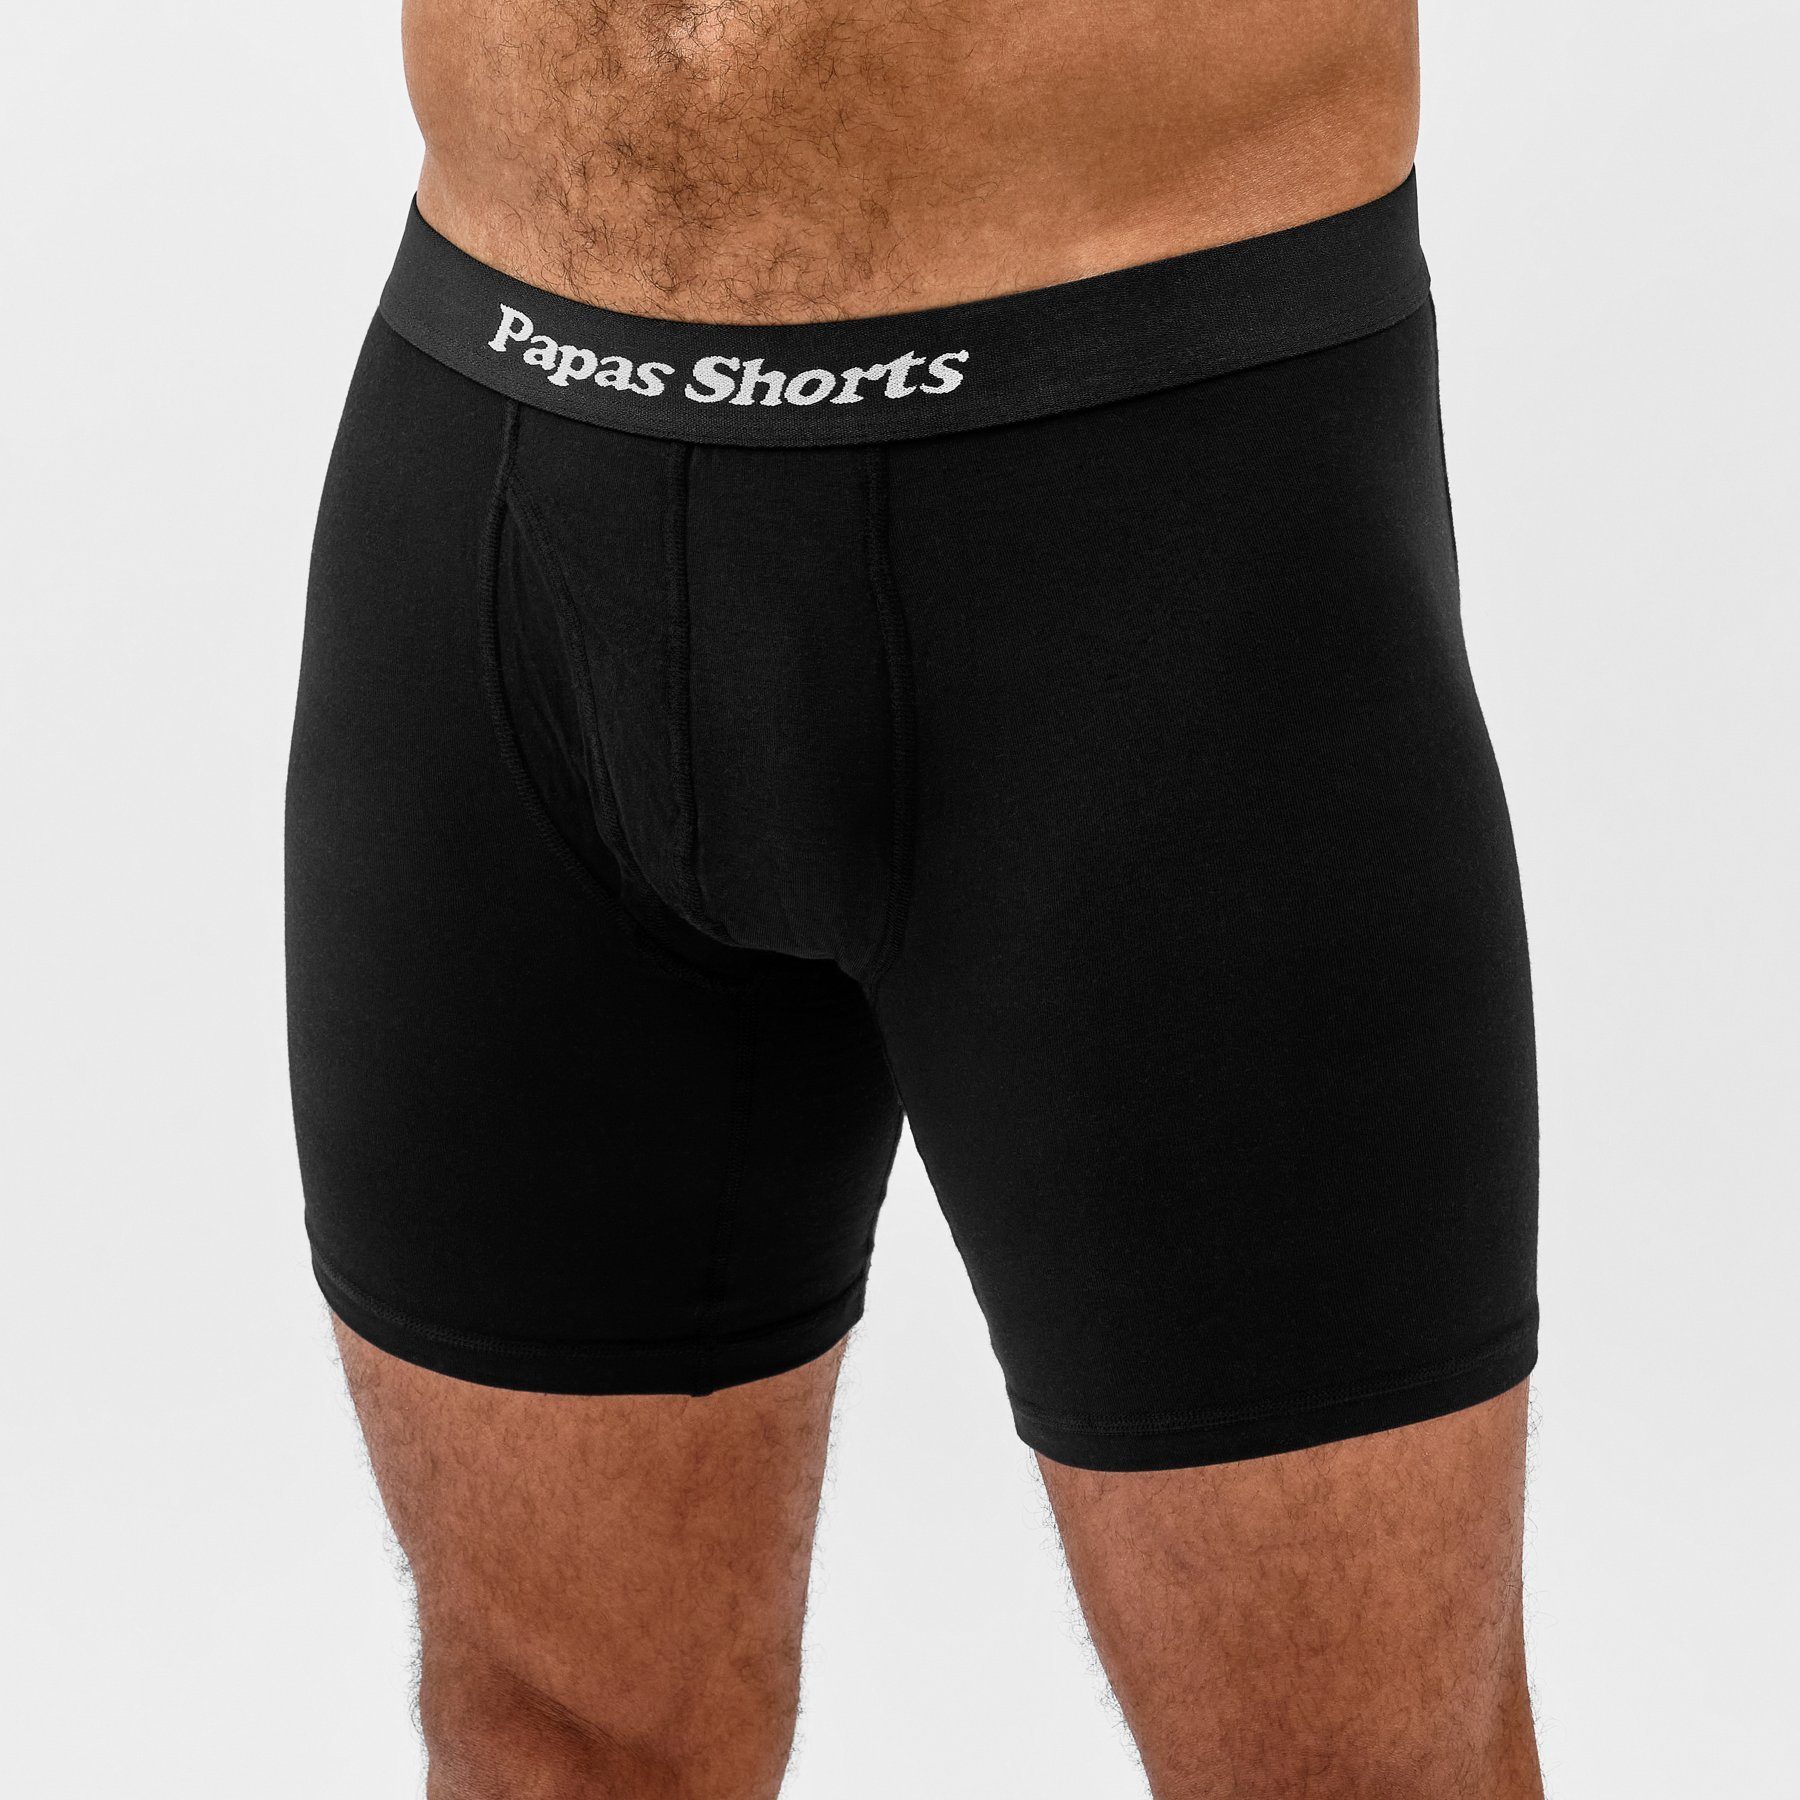 Papas Shorts Boxershorts Schwarze Buxe (Packung, 3er-Pack) aus weichem Modal mit extra Beinlänge gegen Zwicken im Schritt